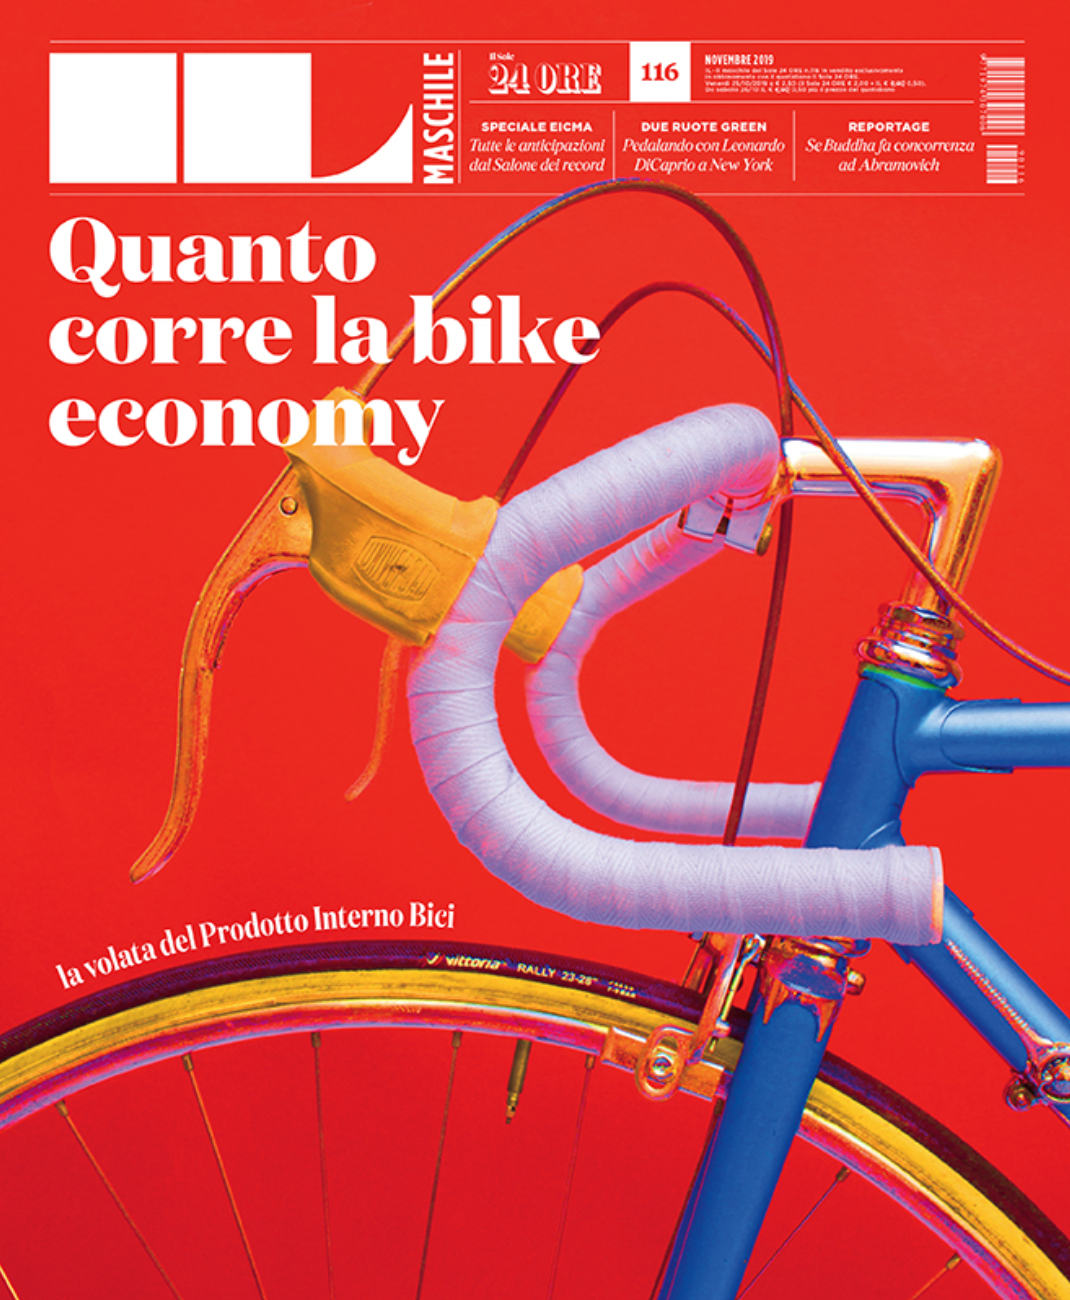 Quanto corre la bike economy?